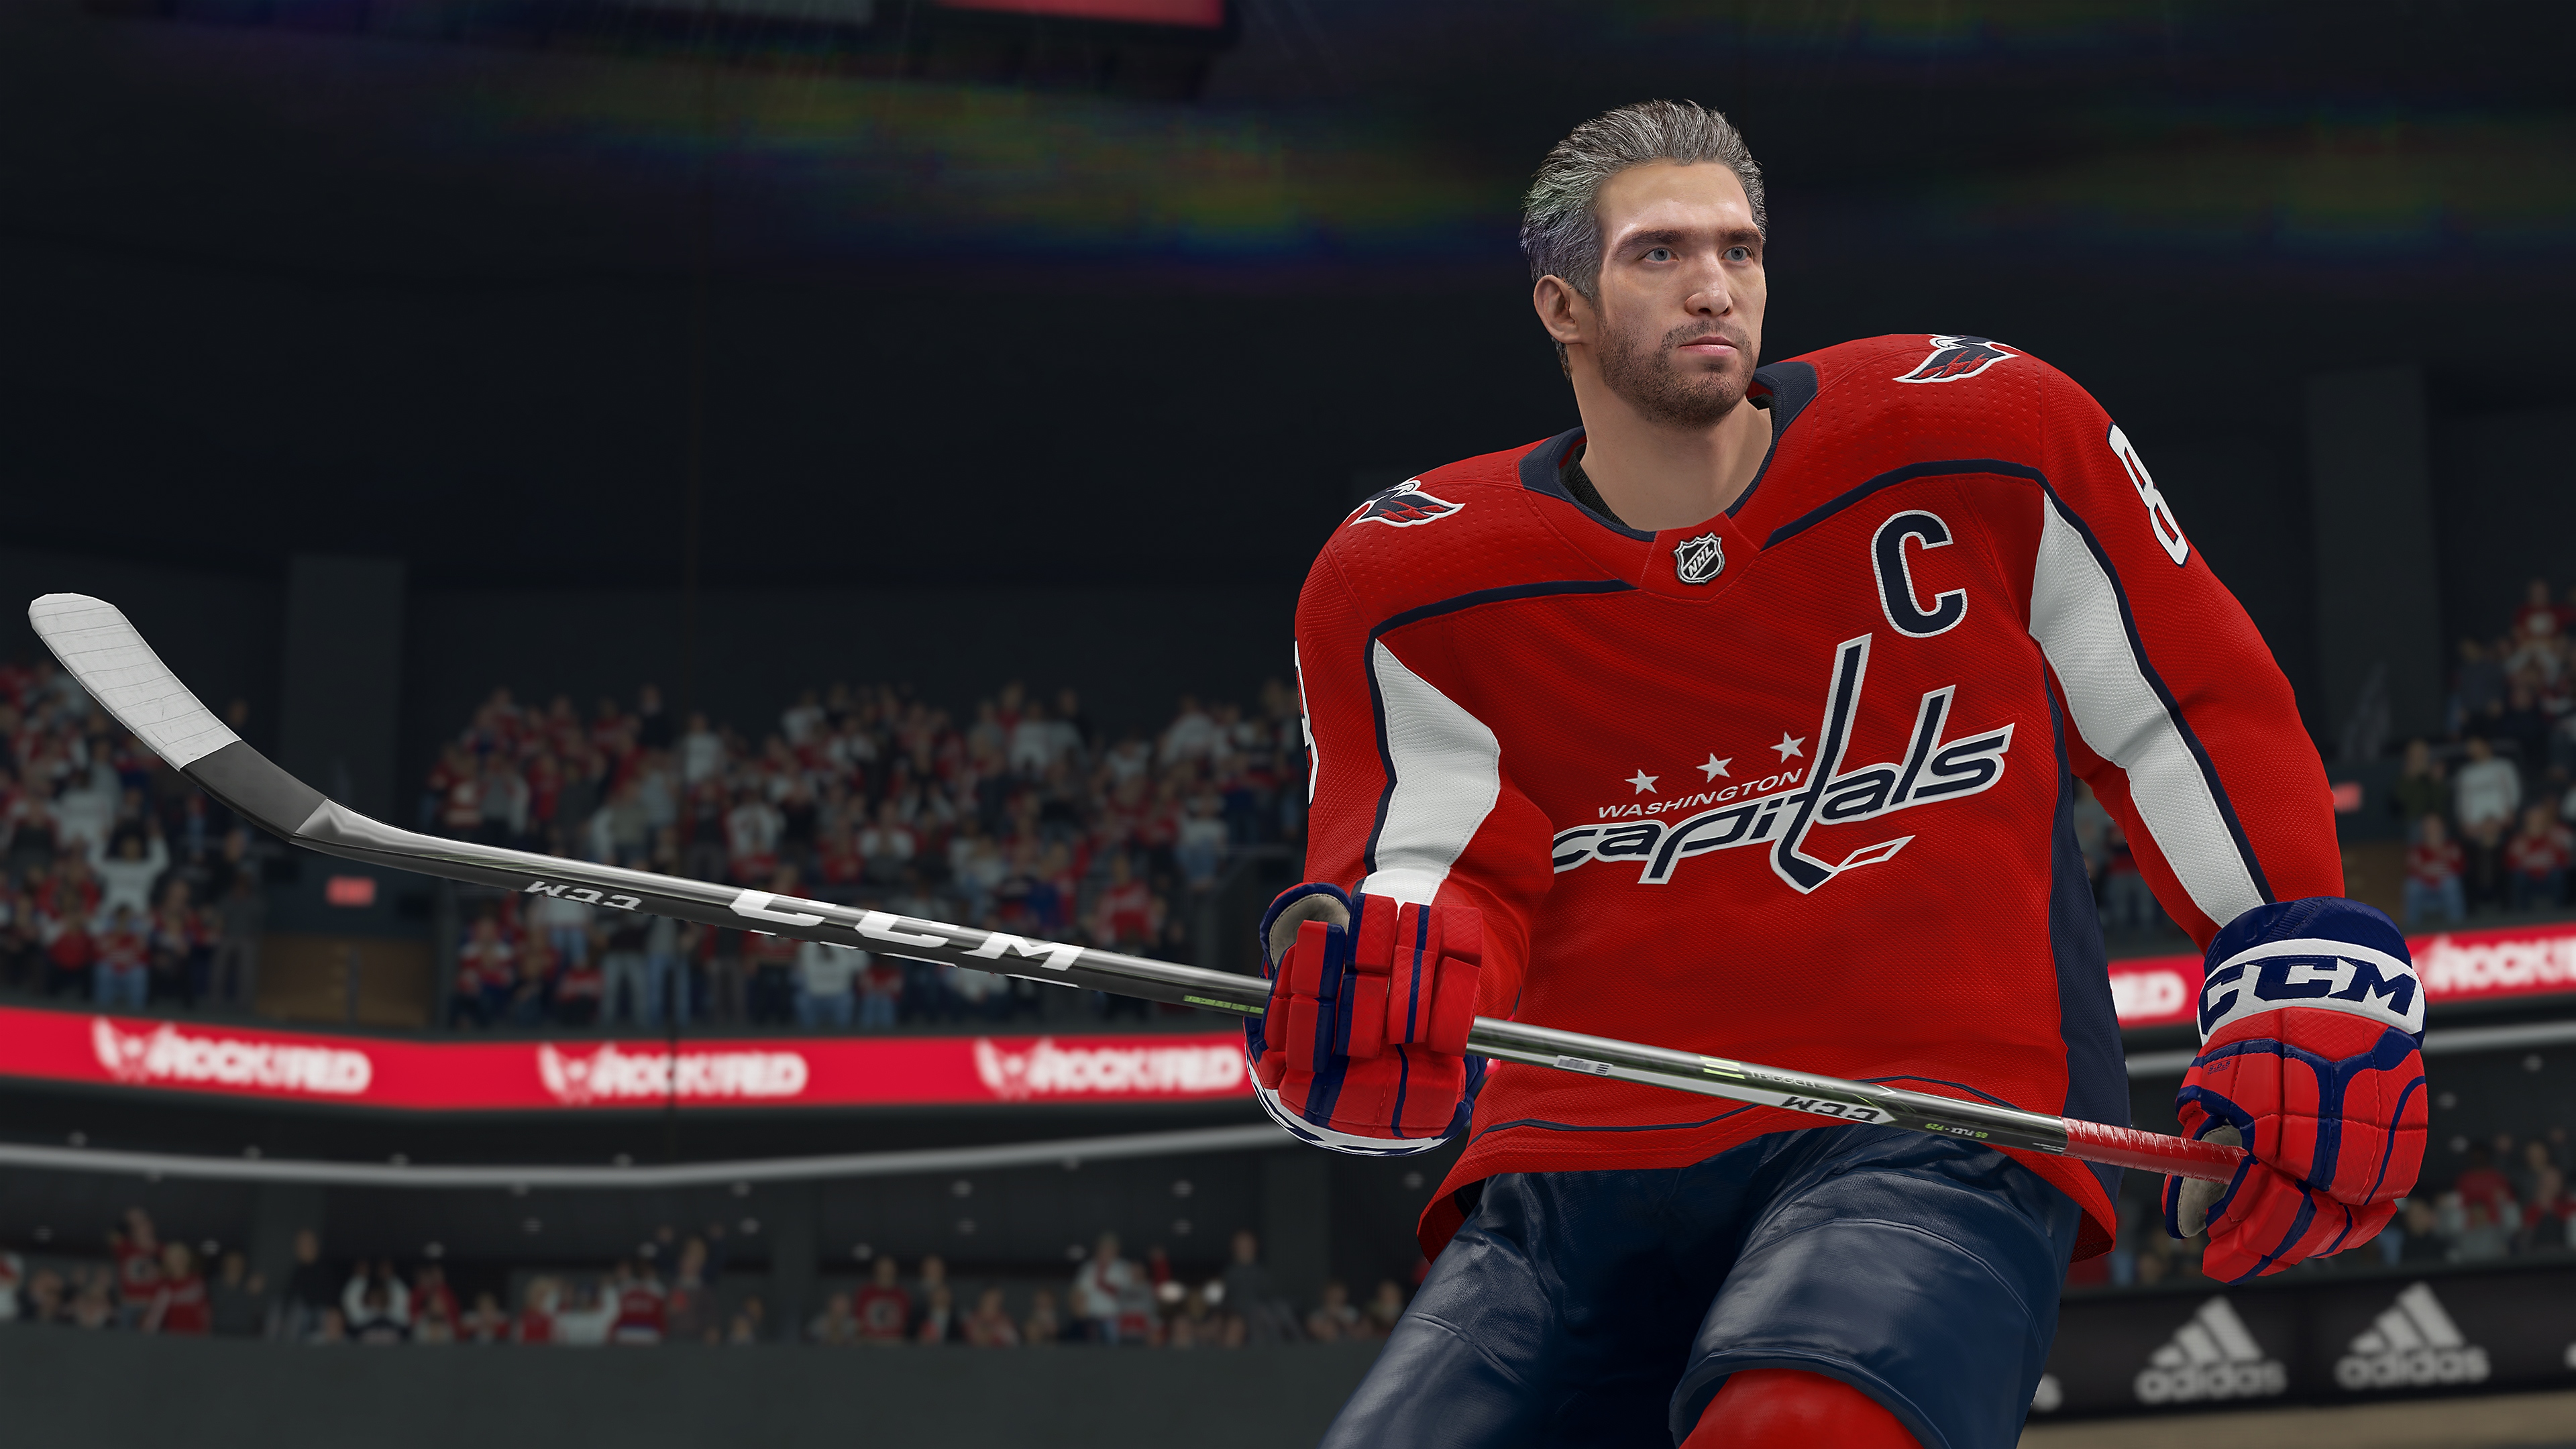 EA SPORTS NHL 21 – Galerie-Screenshot 3